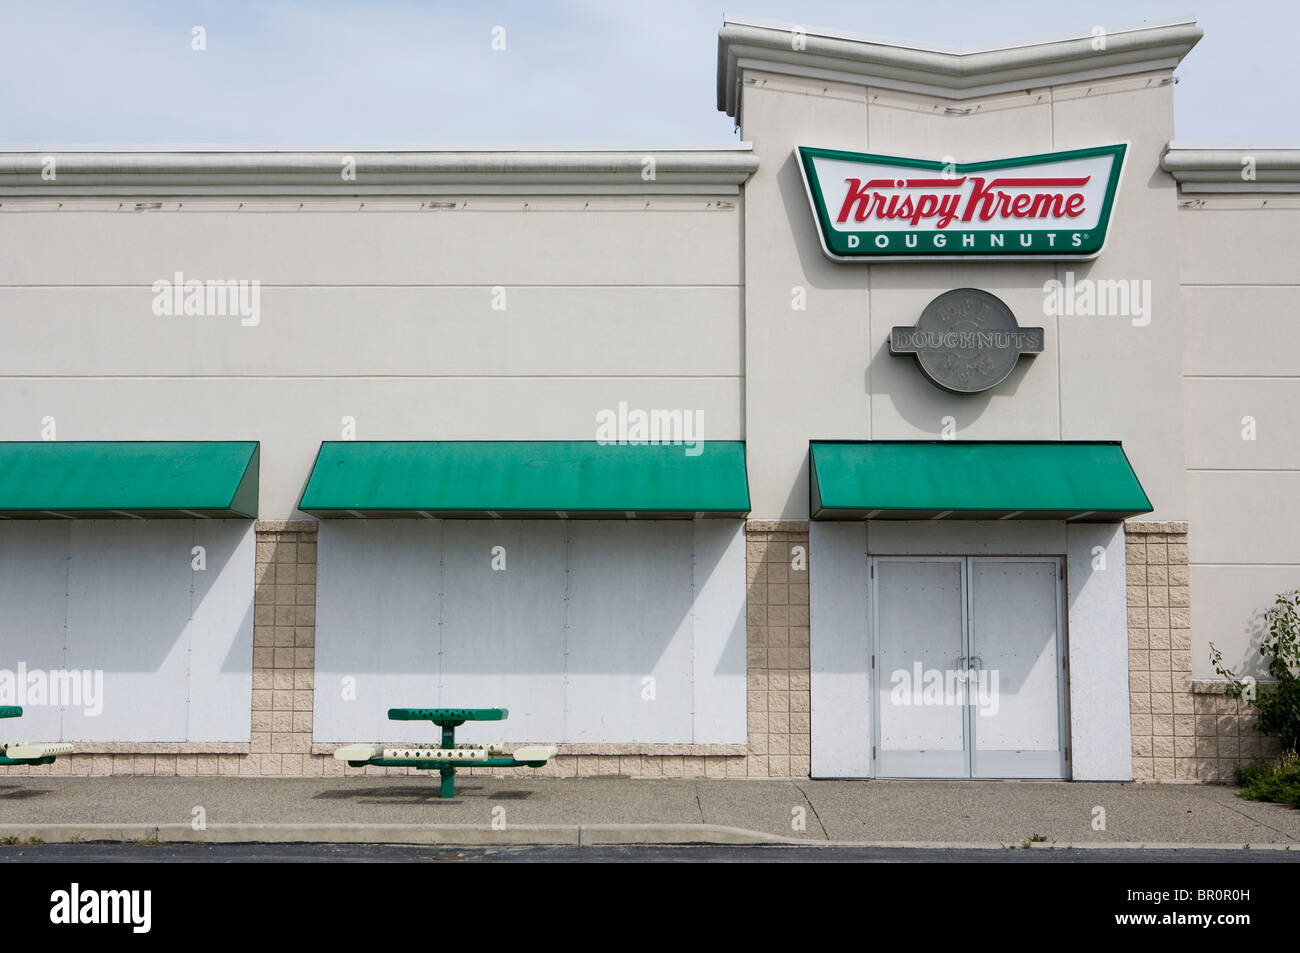 Un magasin de beignes Krispy Kreme. Banque D'Images